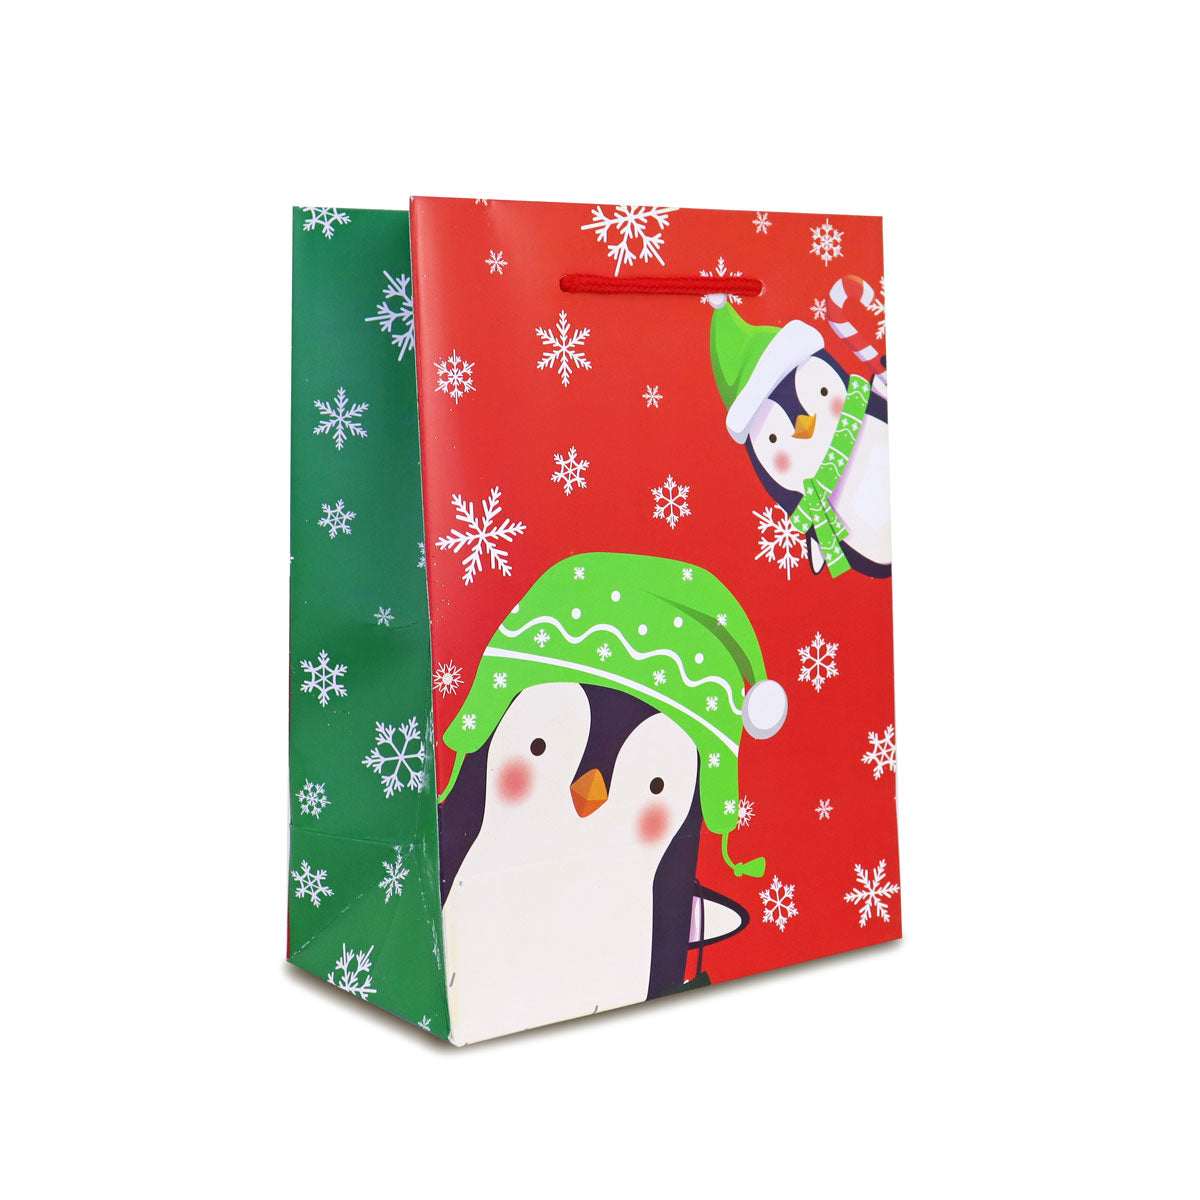 Regalo para amigo invisible kit navidad pinguino